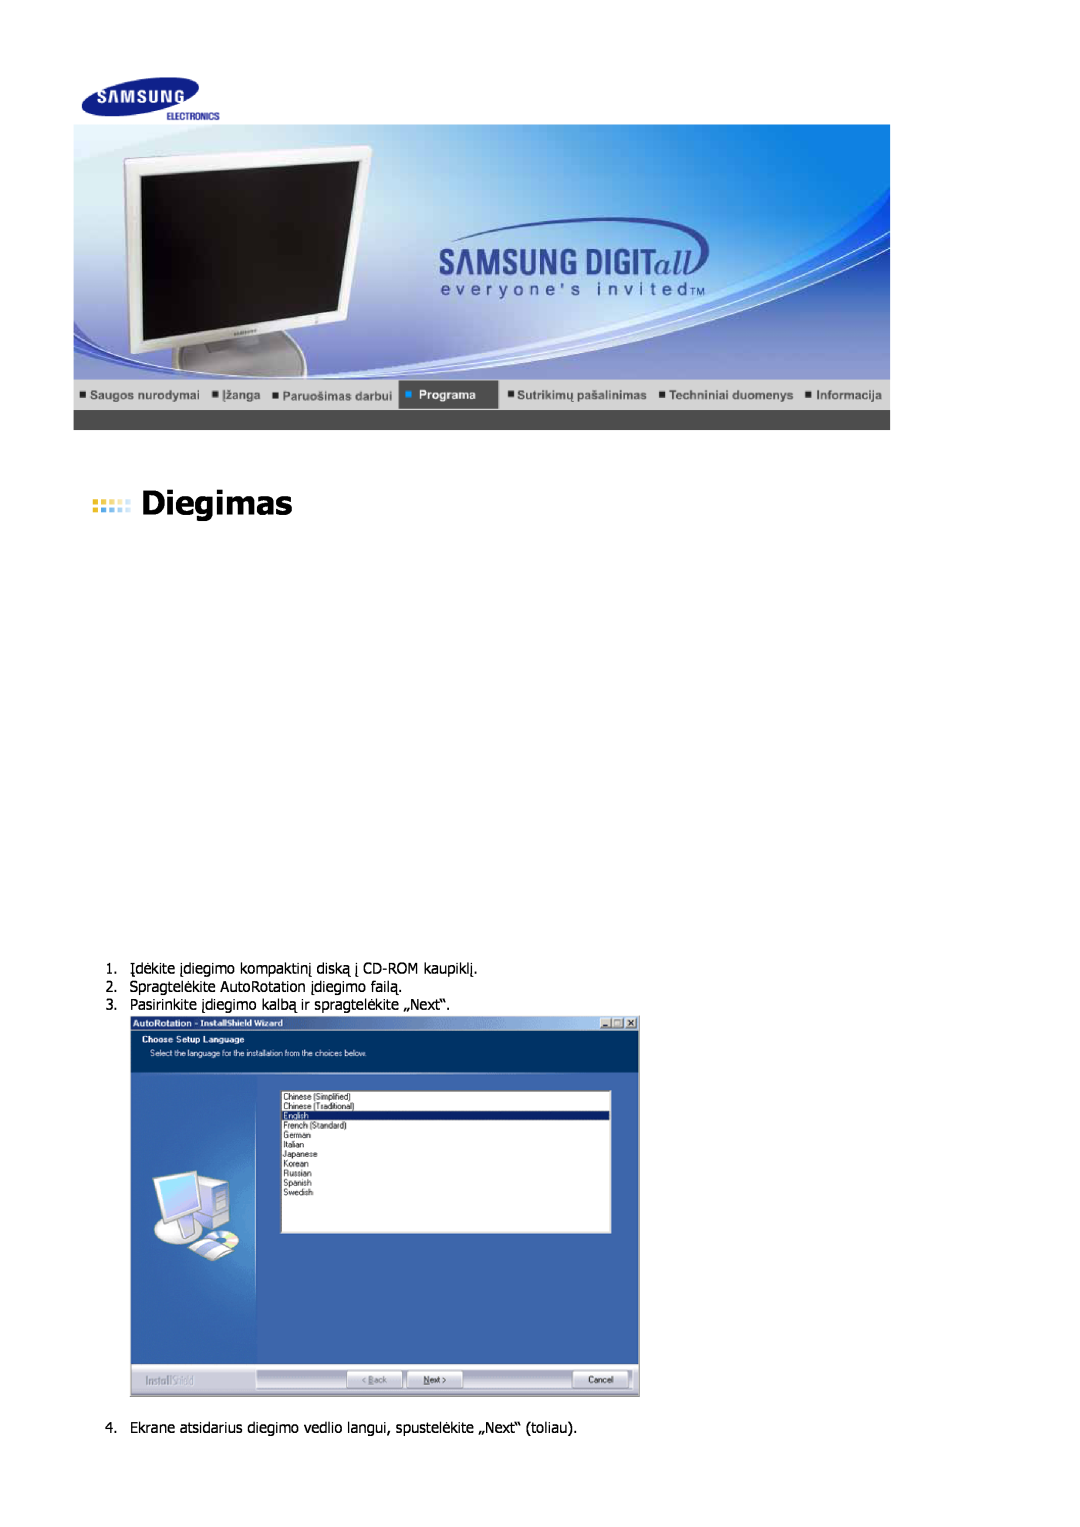 Samsung LS17HJDQFV/EDC, LS19HJDQFV/EDC, LS17HJDQHV/EDC Diegimas, 1. Įdėkite įdiegimo kompaktinį diską į CD-ROM kaupiklį 